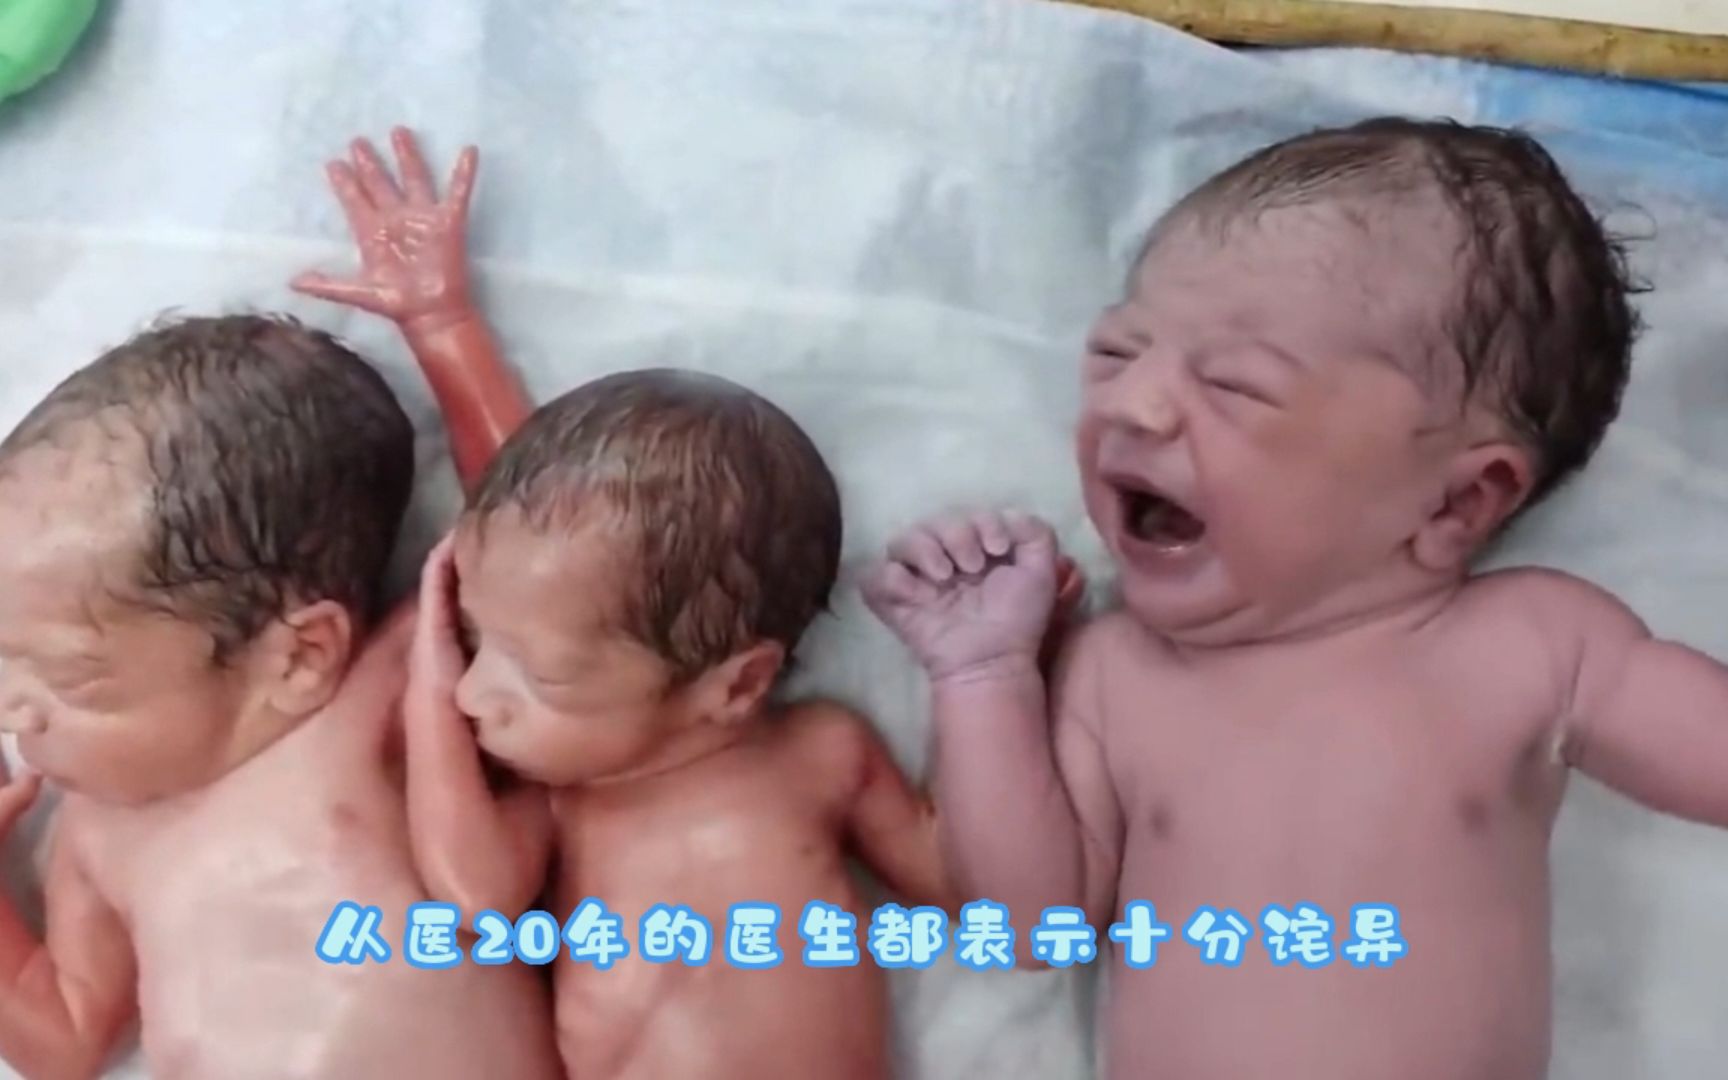 当医生把一个刚出生的宝宝放在这对双胞胎旁边时，他感到震惊